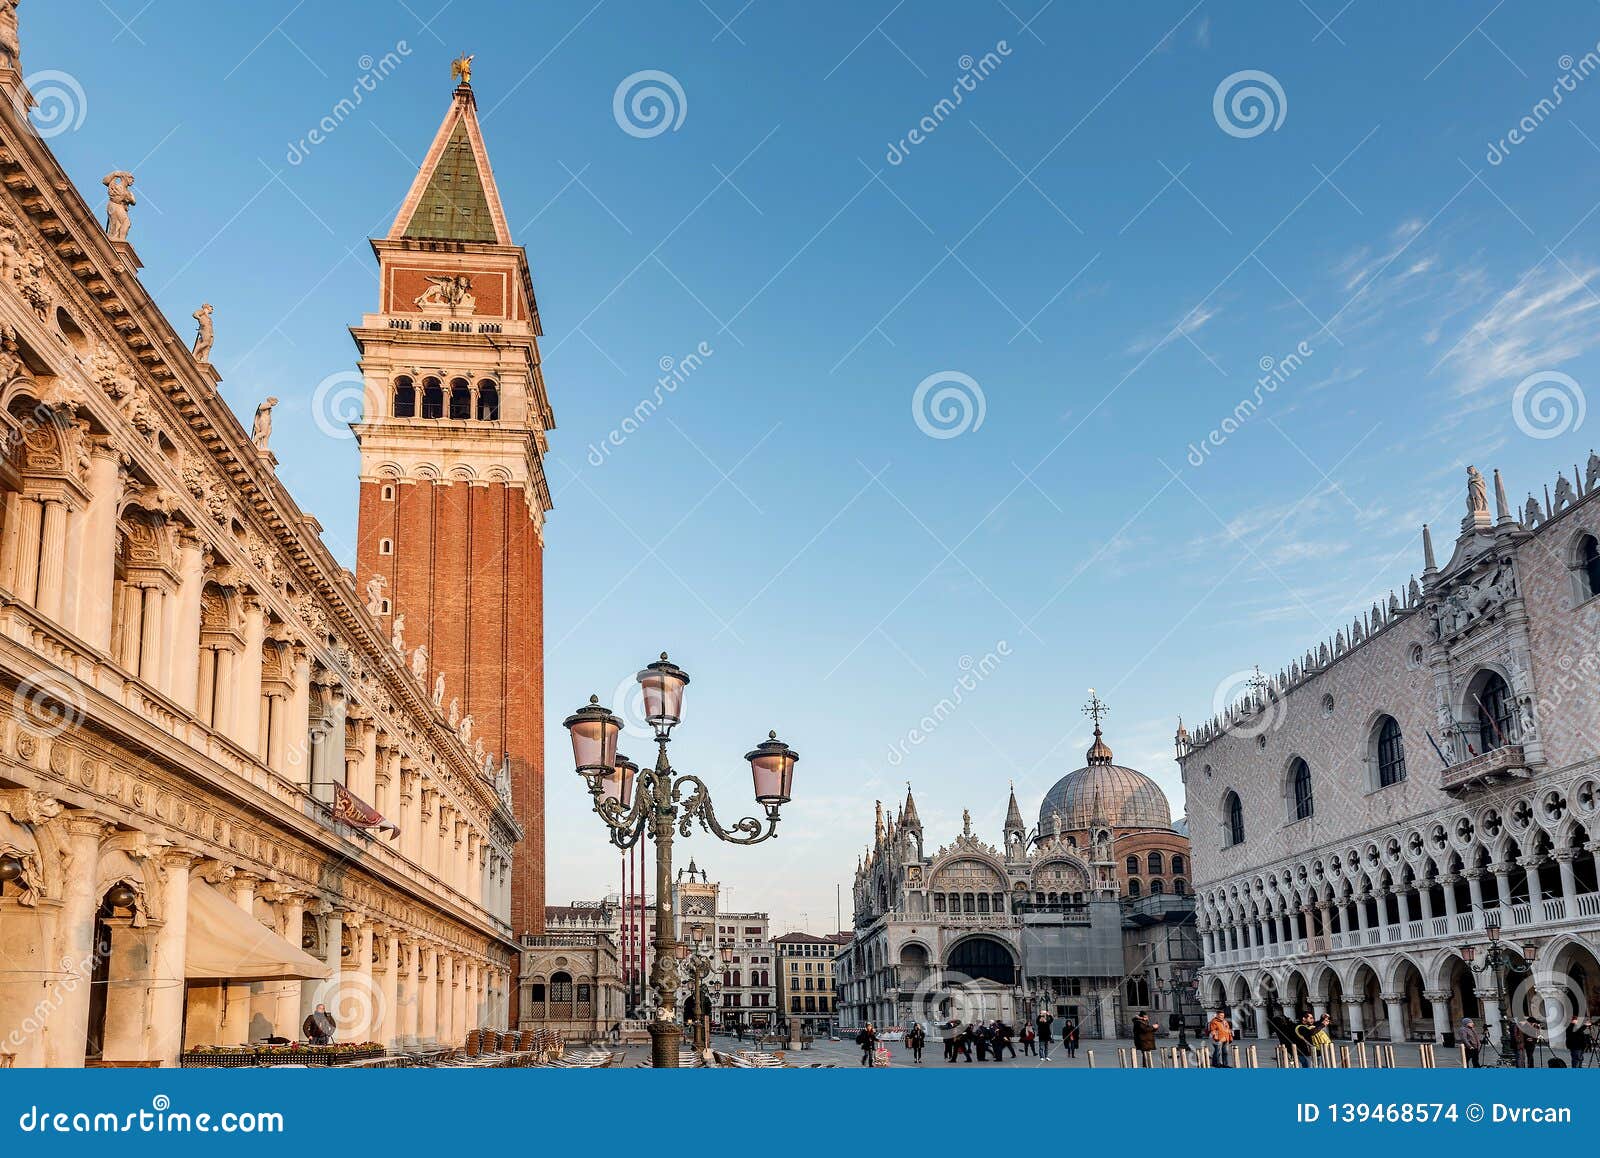 Basilica Di San Marco San Marco Square In Venice Italy